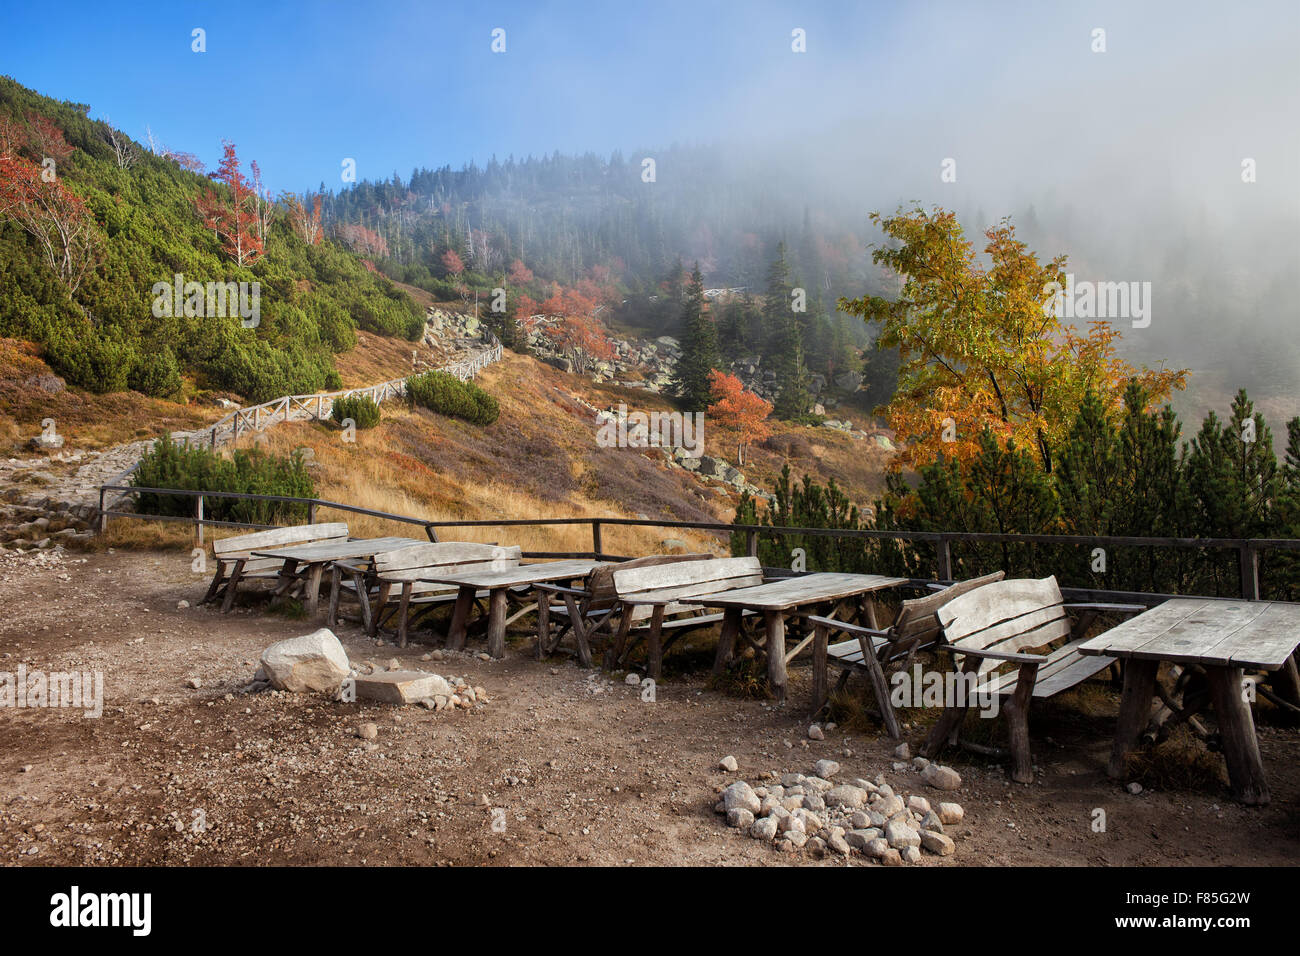 Tavoli da picnic con panche, luogo di riposo in autunno il paesaggio dei monti Karkonosze, Polonia Foto Stock